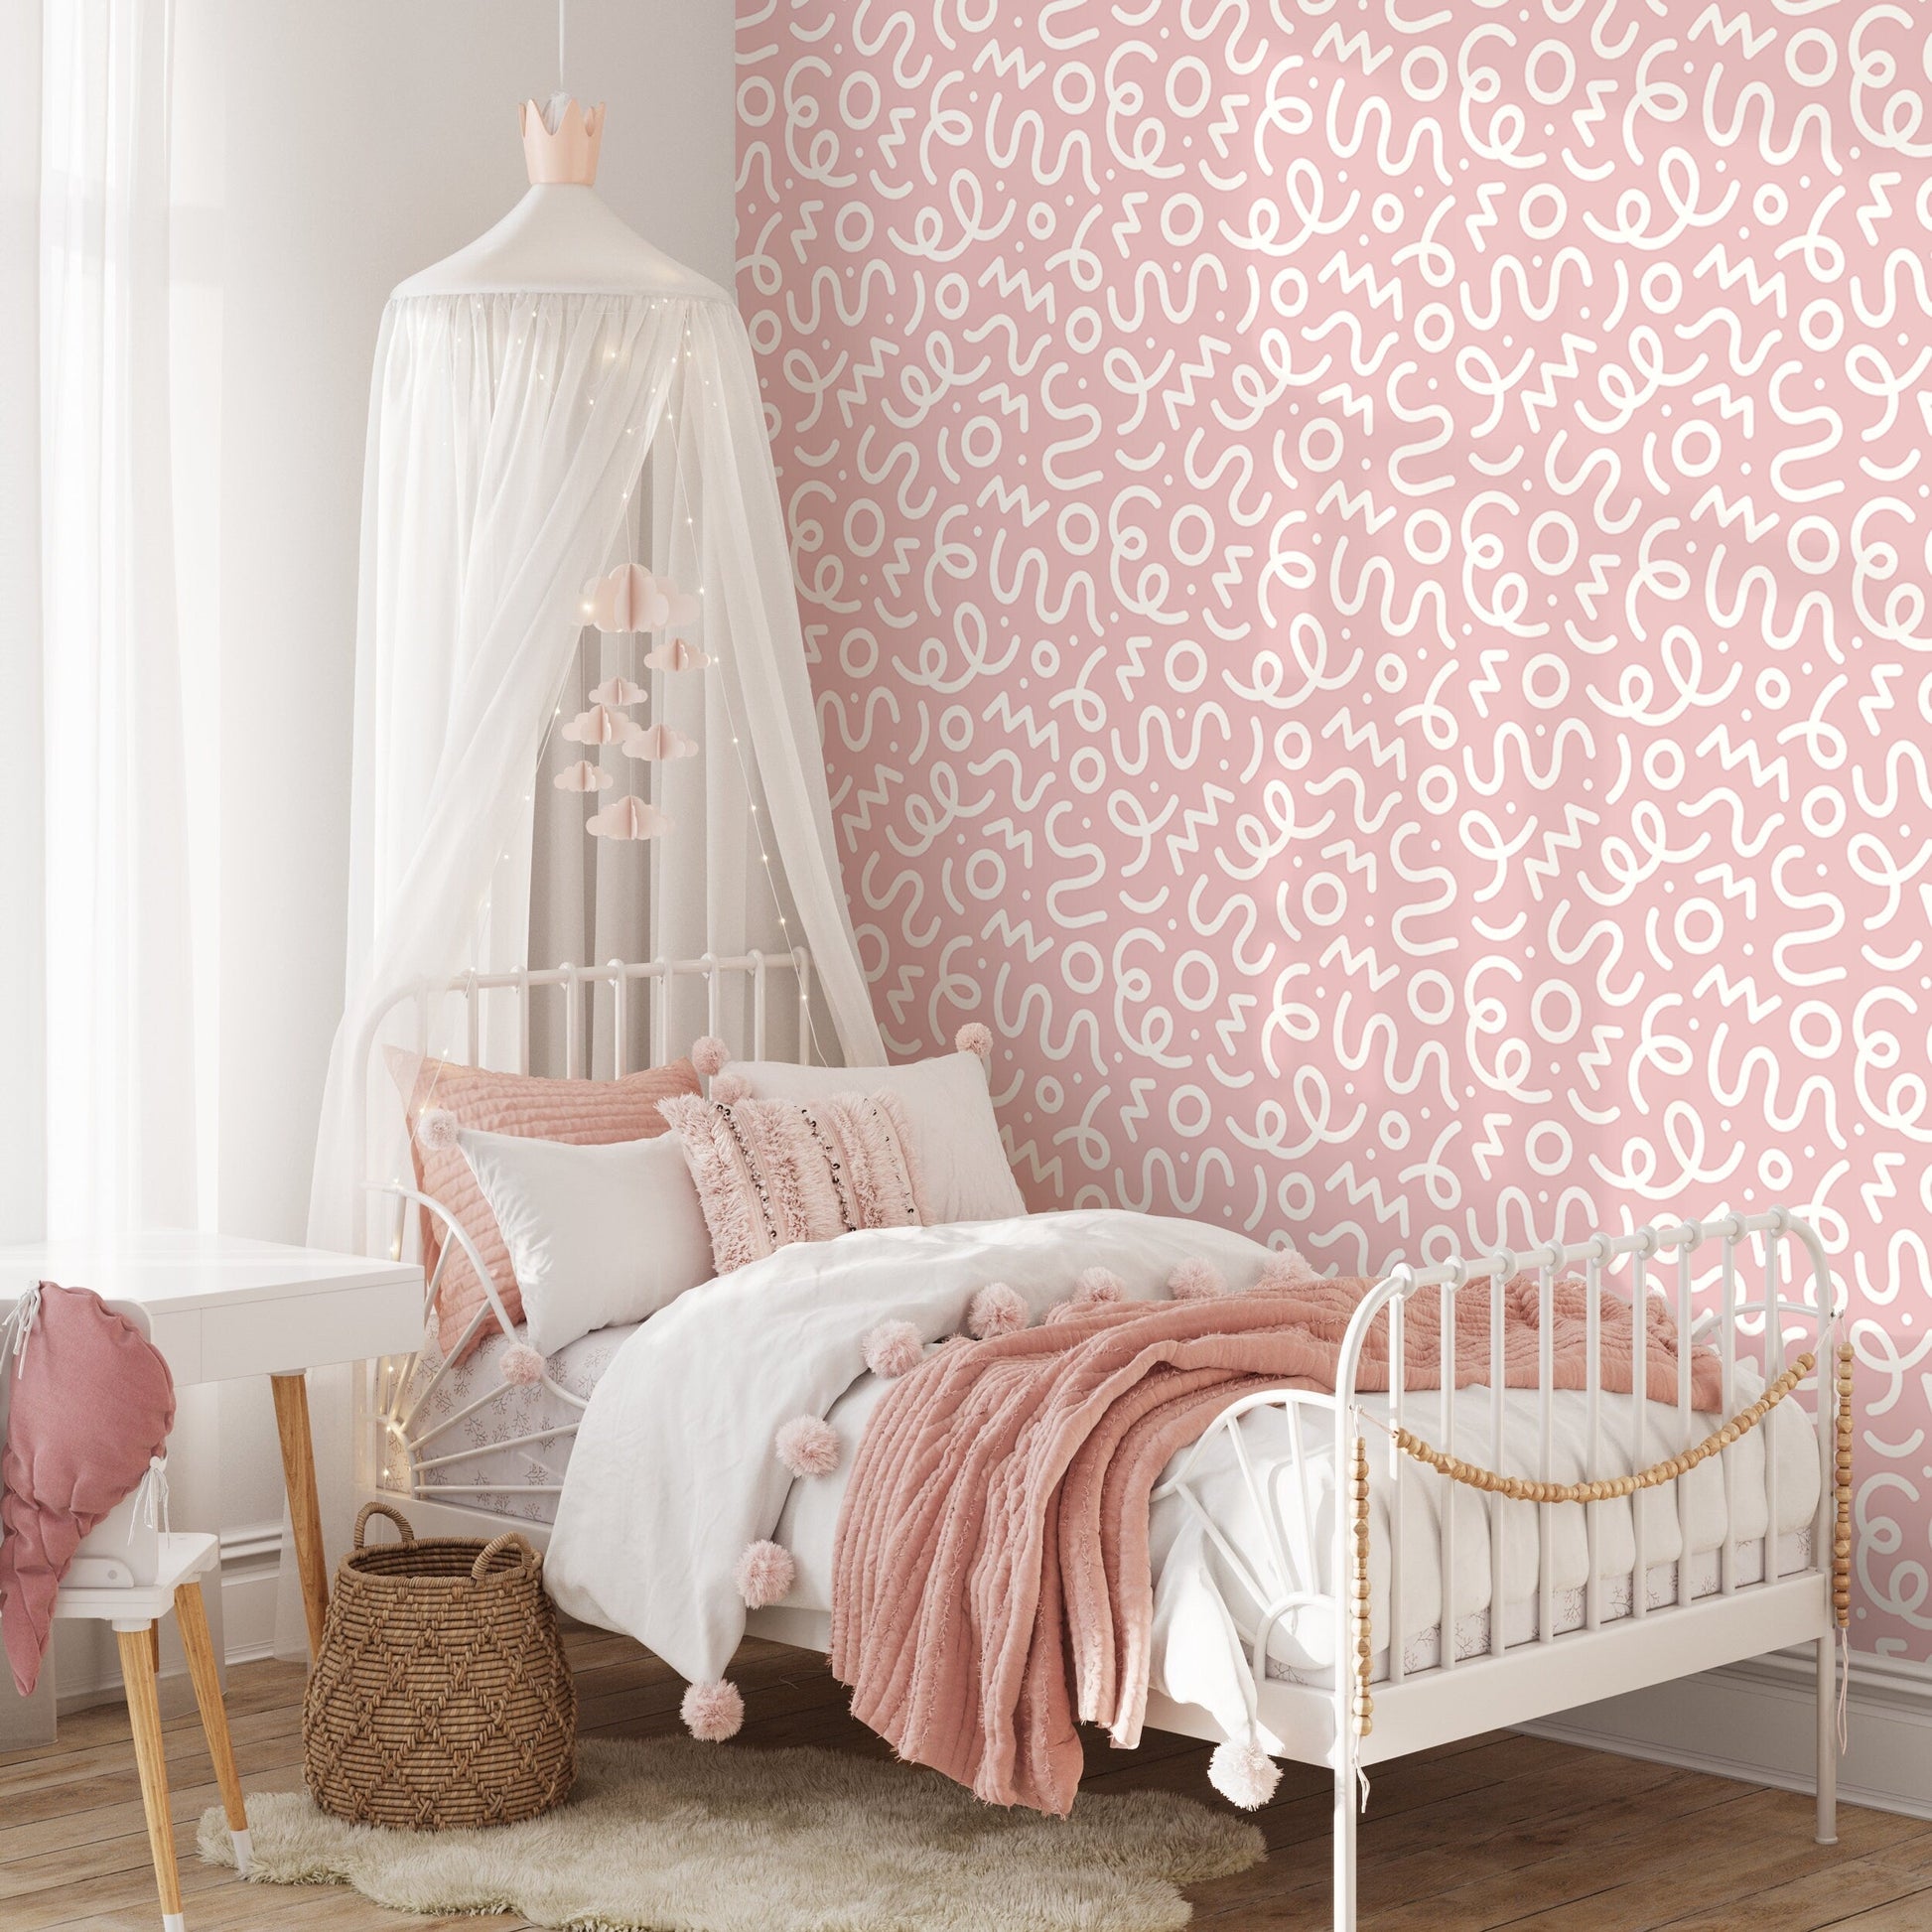 Pink Abstract Wallpaper Nursery Wallpaper Modern Wallpaper Peel and Stick Wallpaper Home Decor - D577